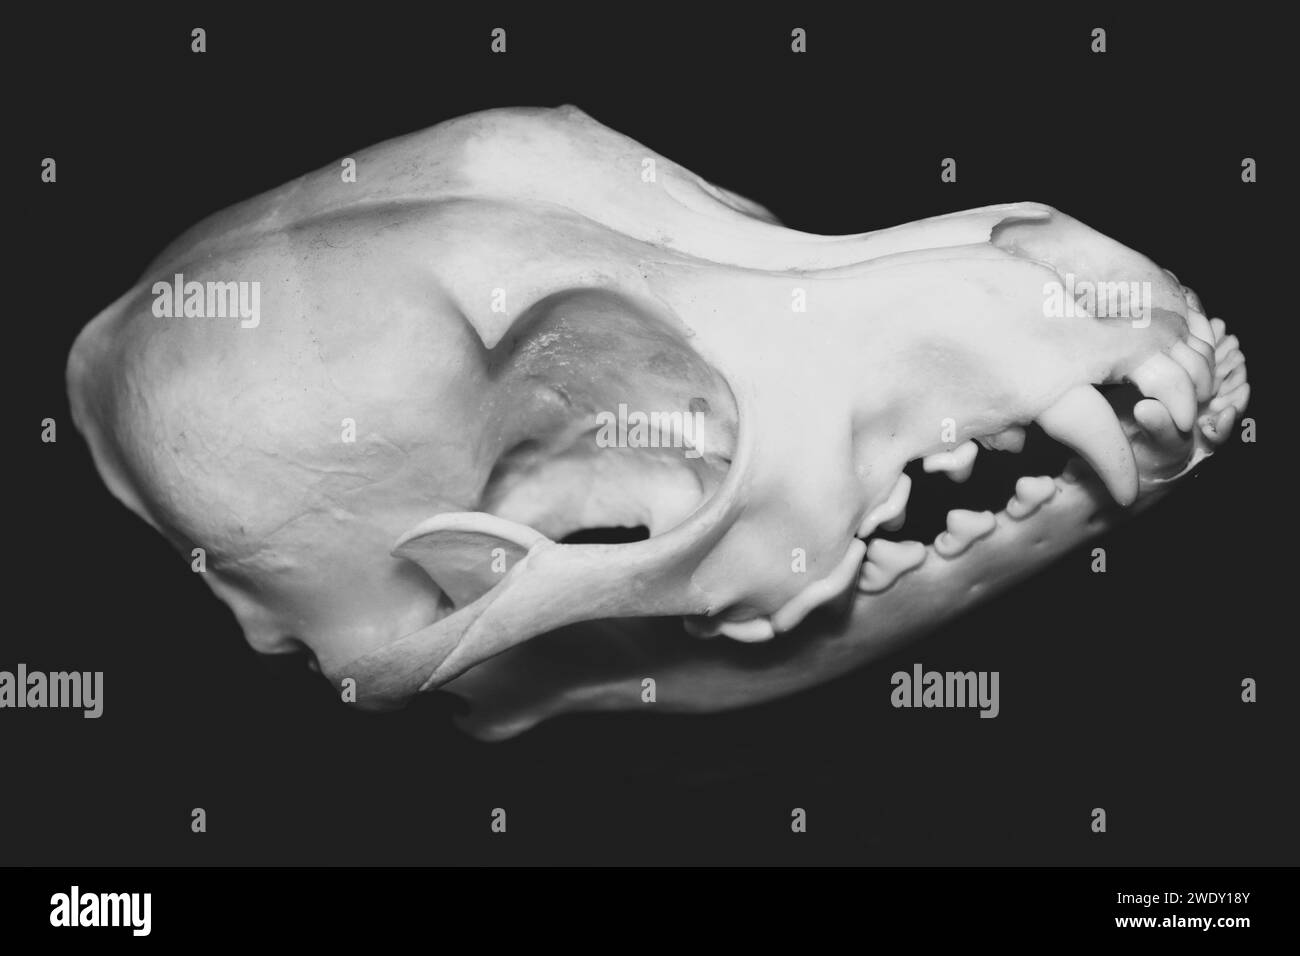 Primo piano sul cranio di un cane, visto di lato. Fotografia in bianco e nero. Vero canis lupus familiaris, esemplare museale. Foto Stock